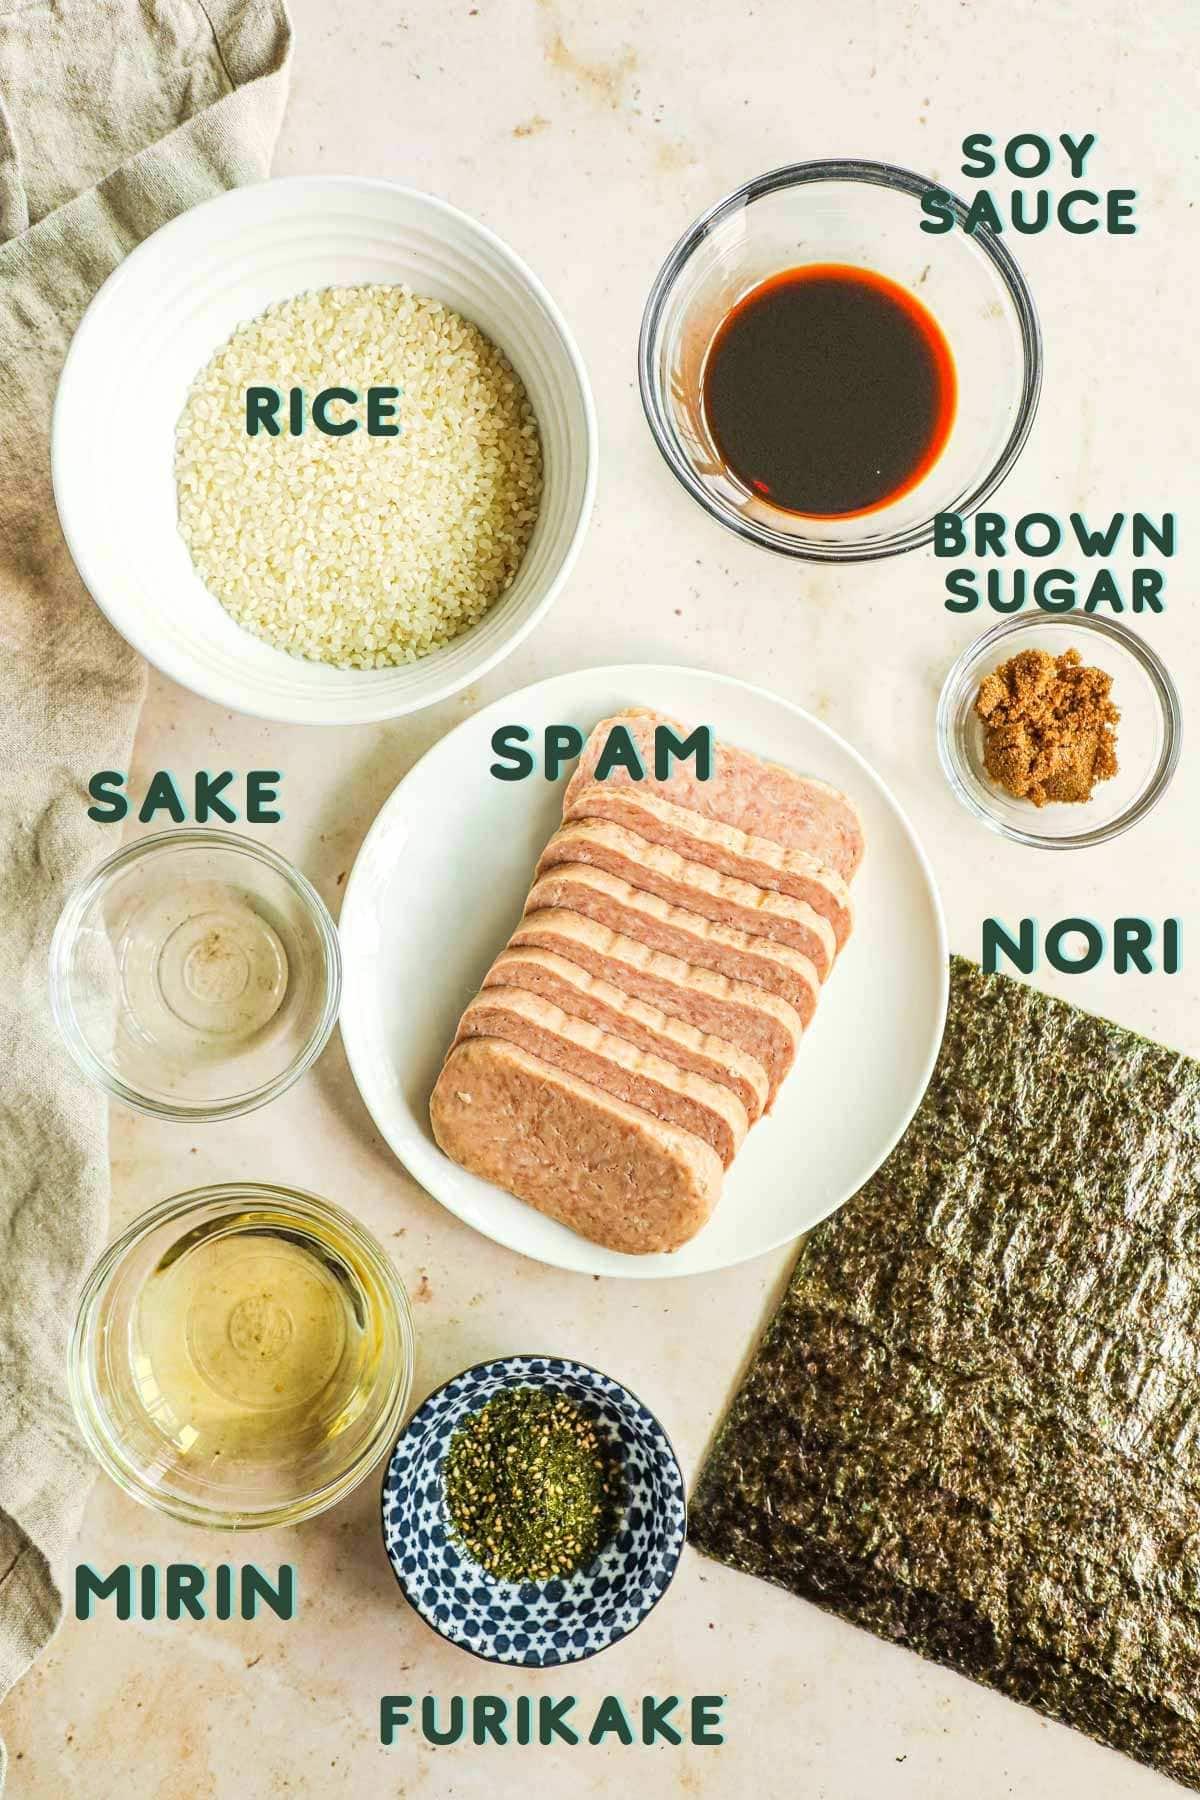 Ingredients to make teriyaki Spam musubi, including rice, shoyu, spam, brown sugar, nori, furikake, mirin, and sake.